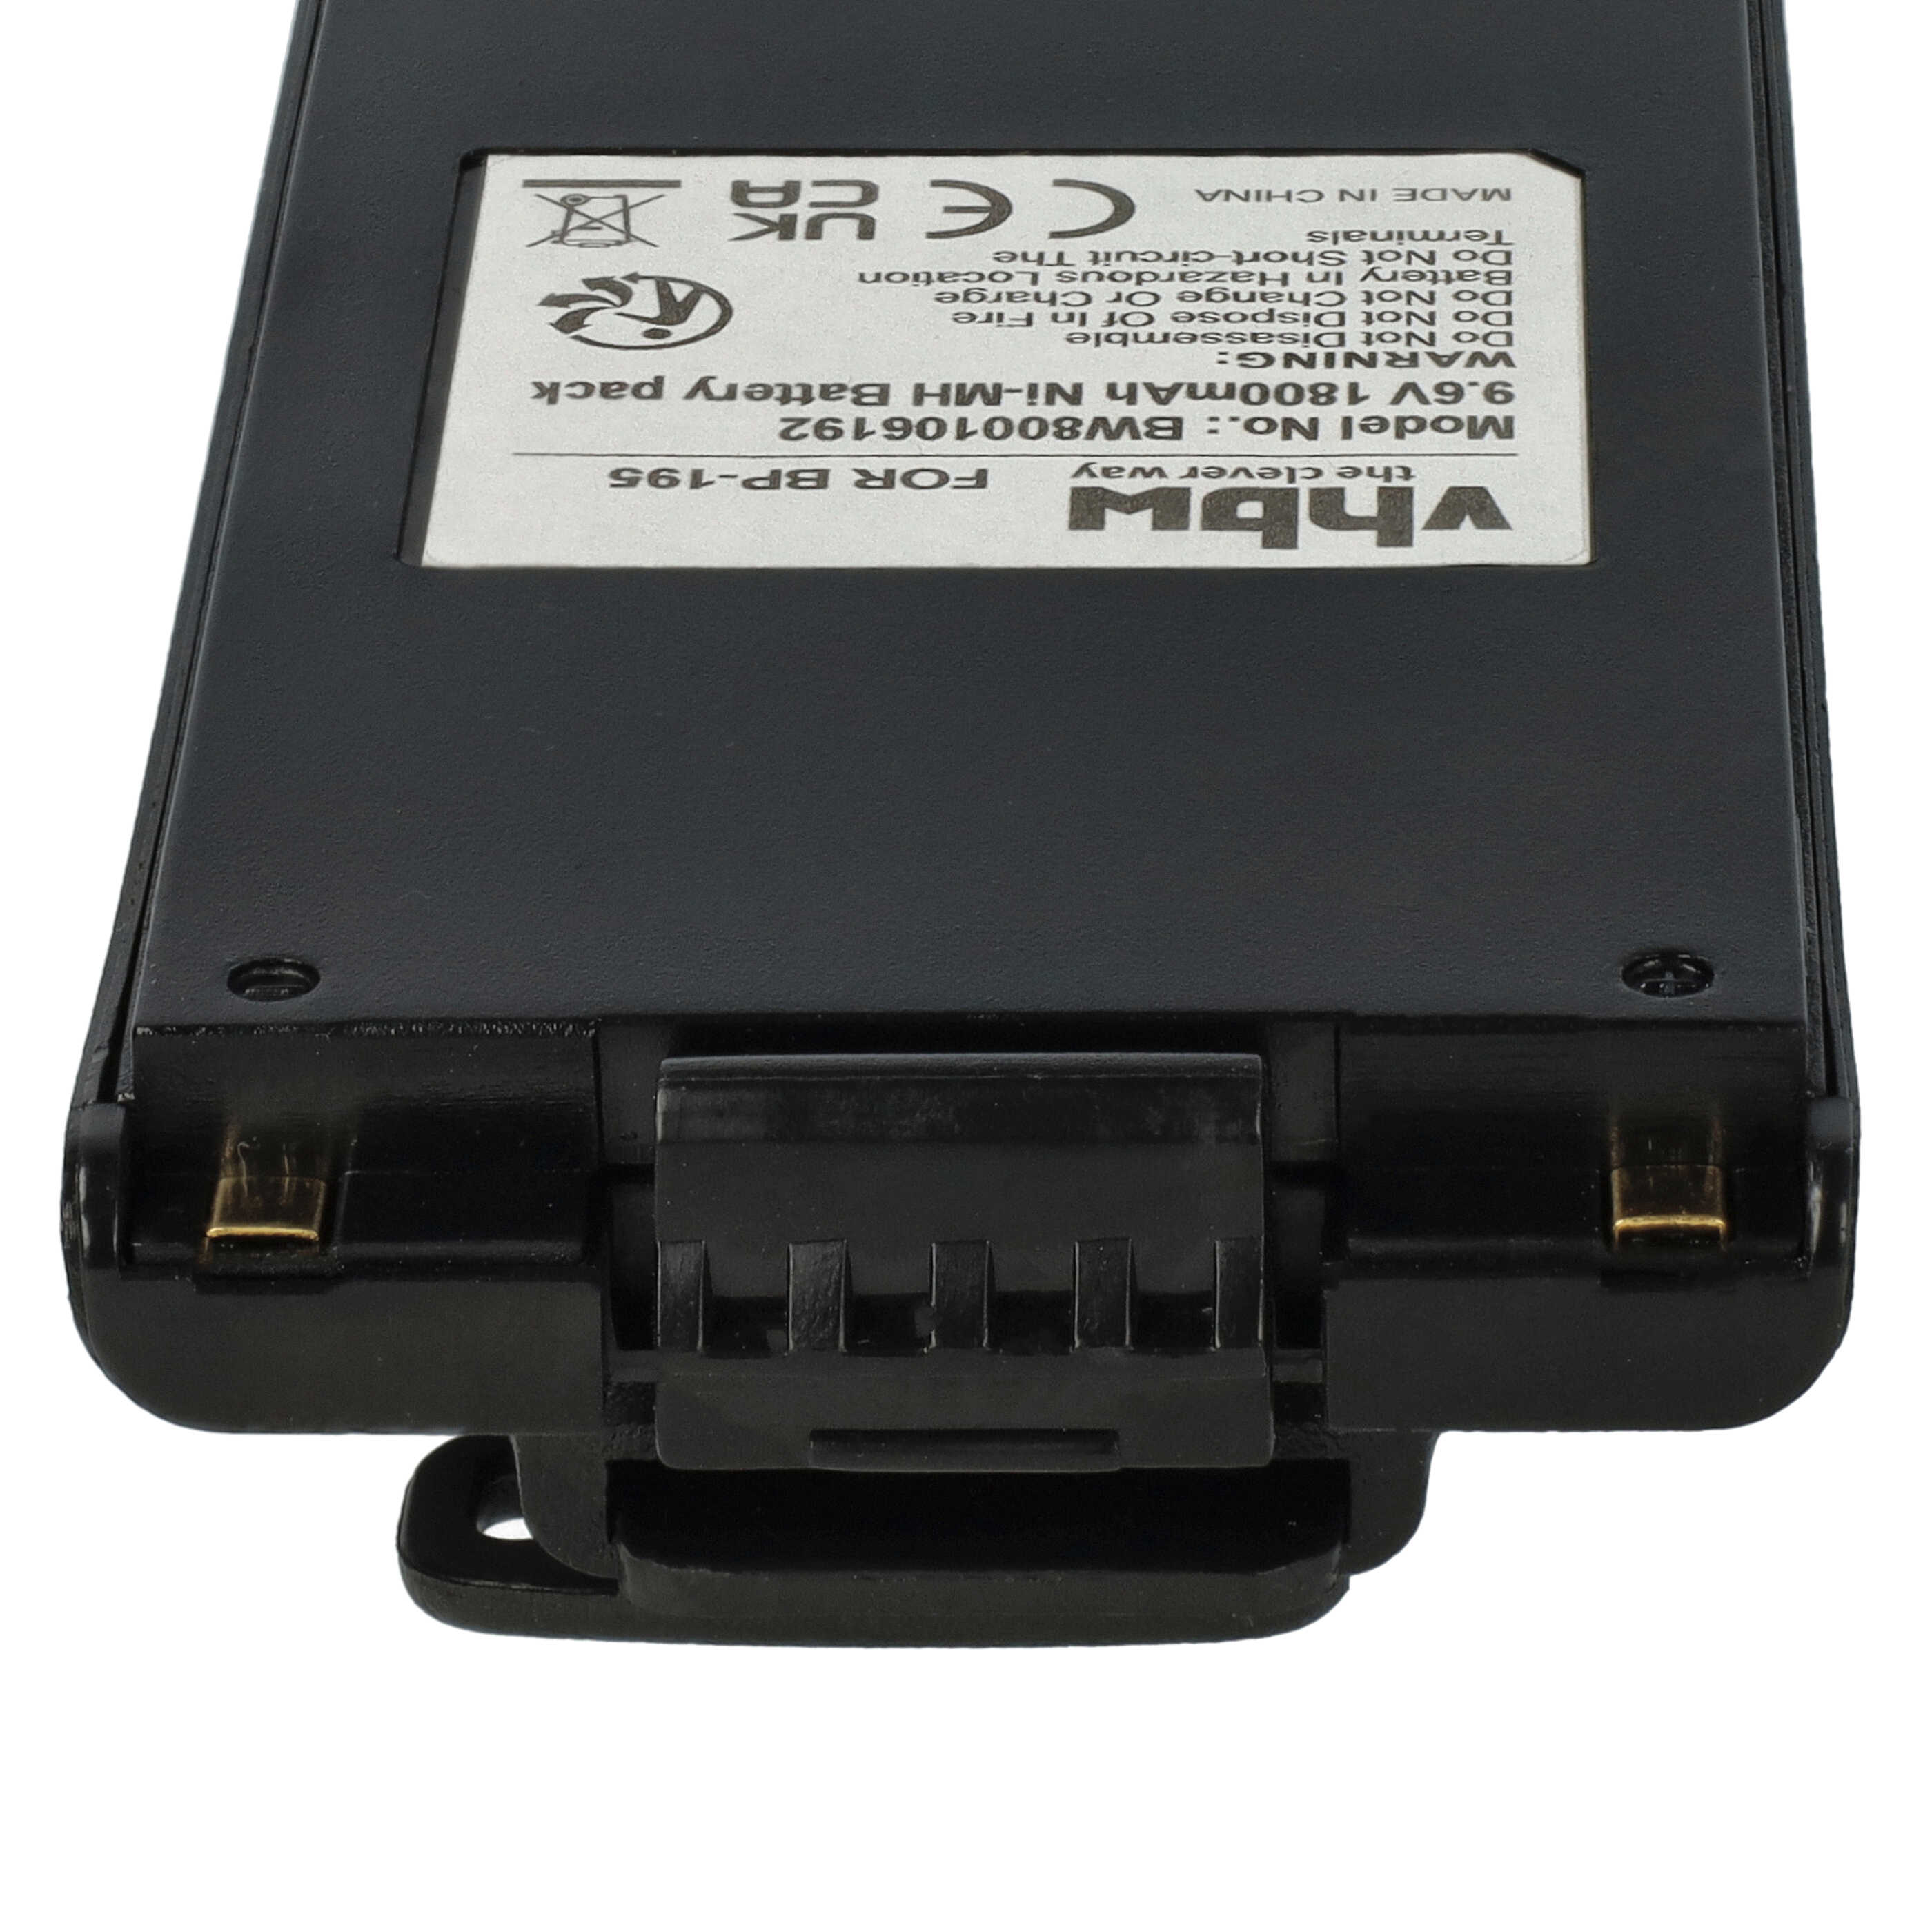 Batería reemplaza Icom BP-195, BP-196H, BP-196 para radio, walkie-talkie Icom - 1800 mAh 9,6 V NiMH con clip